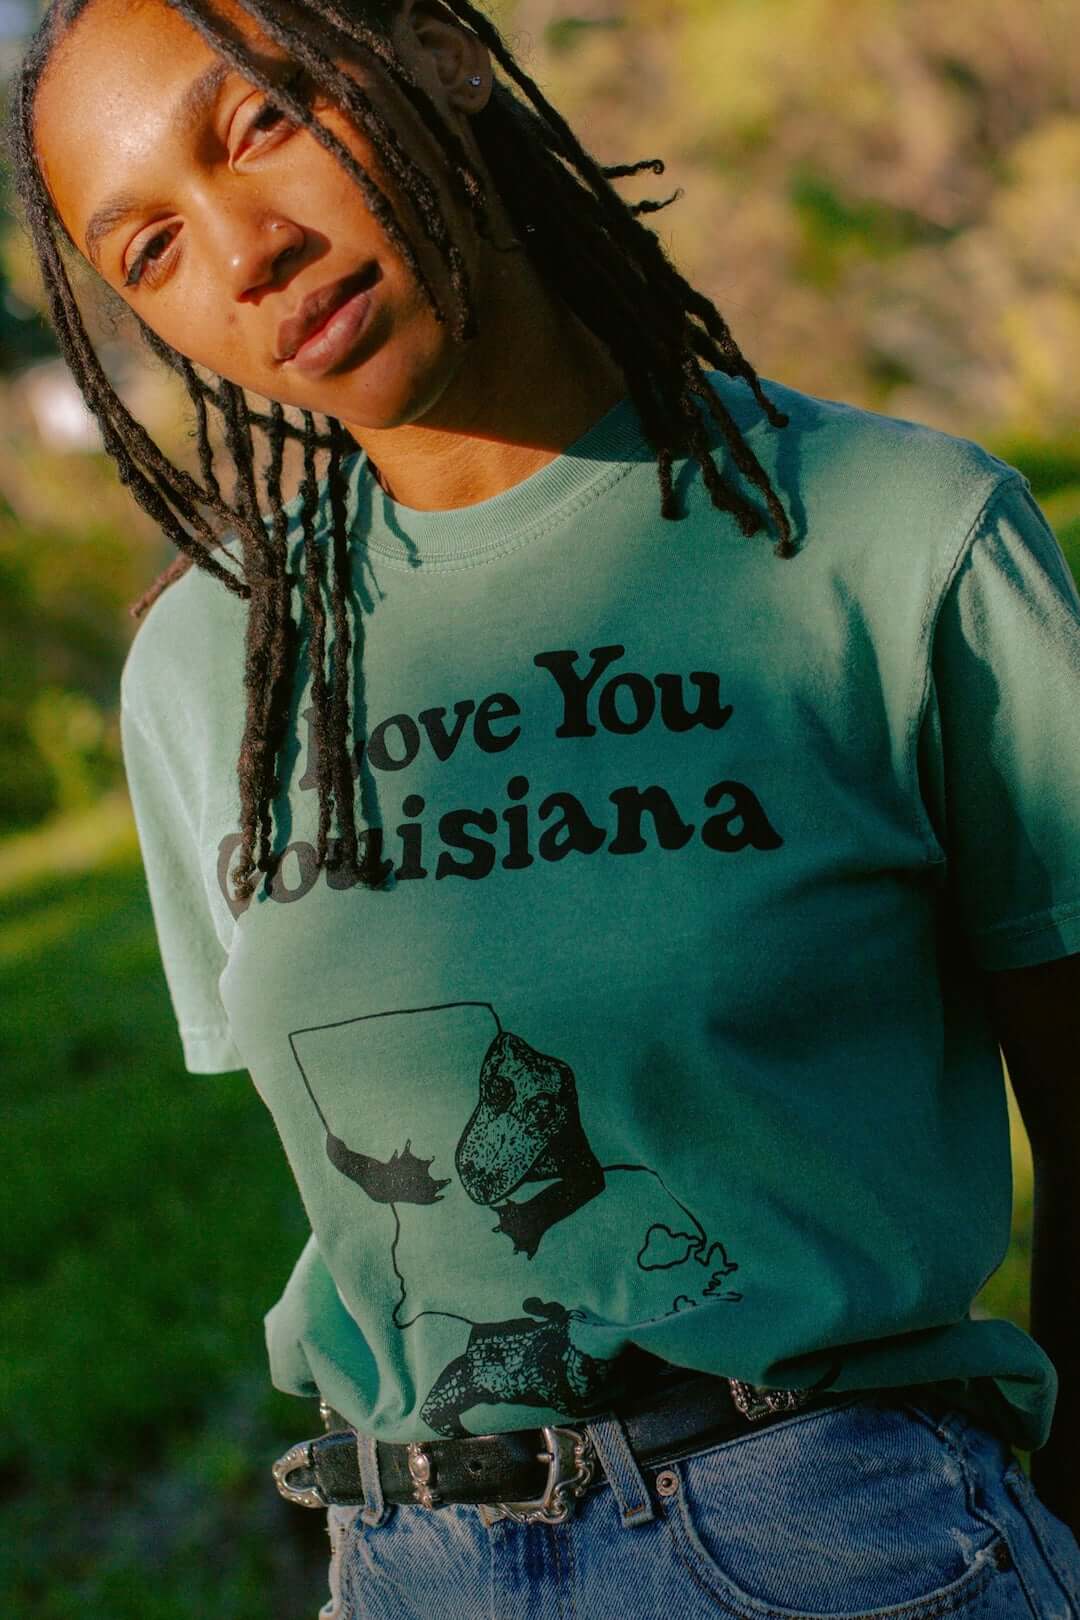 Alexandria Louisiana I love my home town' Men's V-Neck T-Shirt